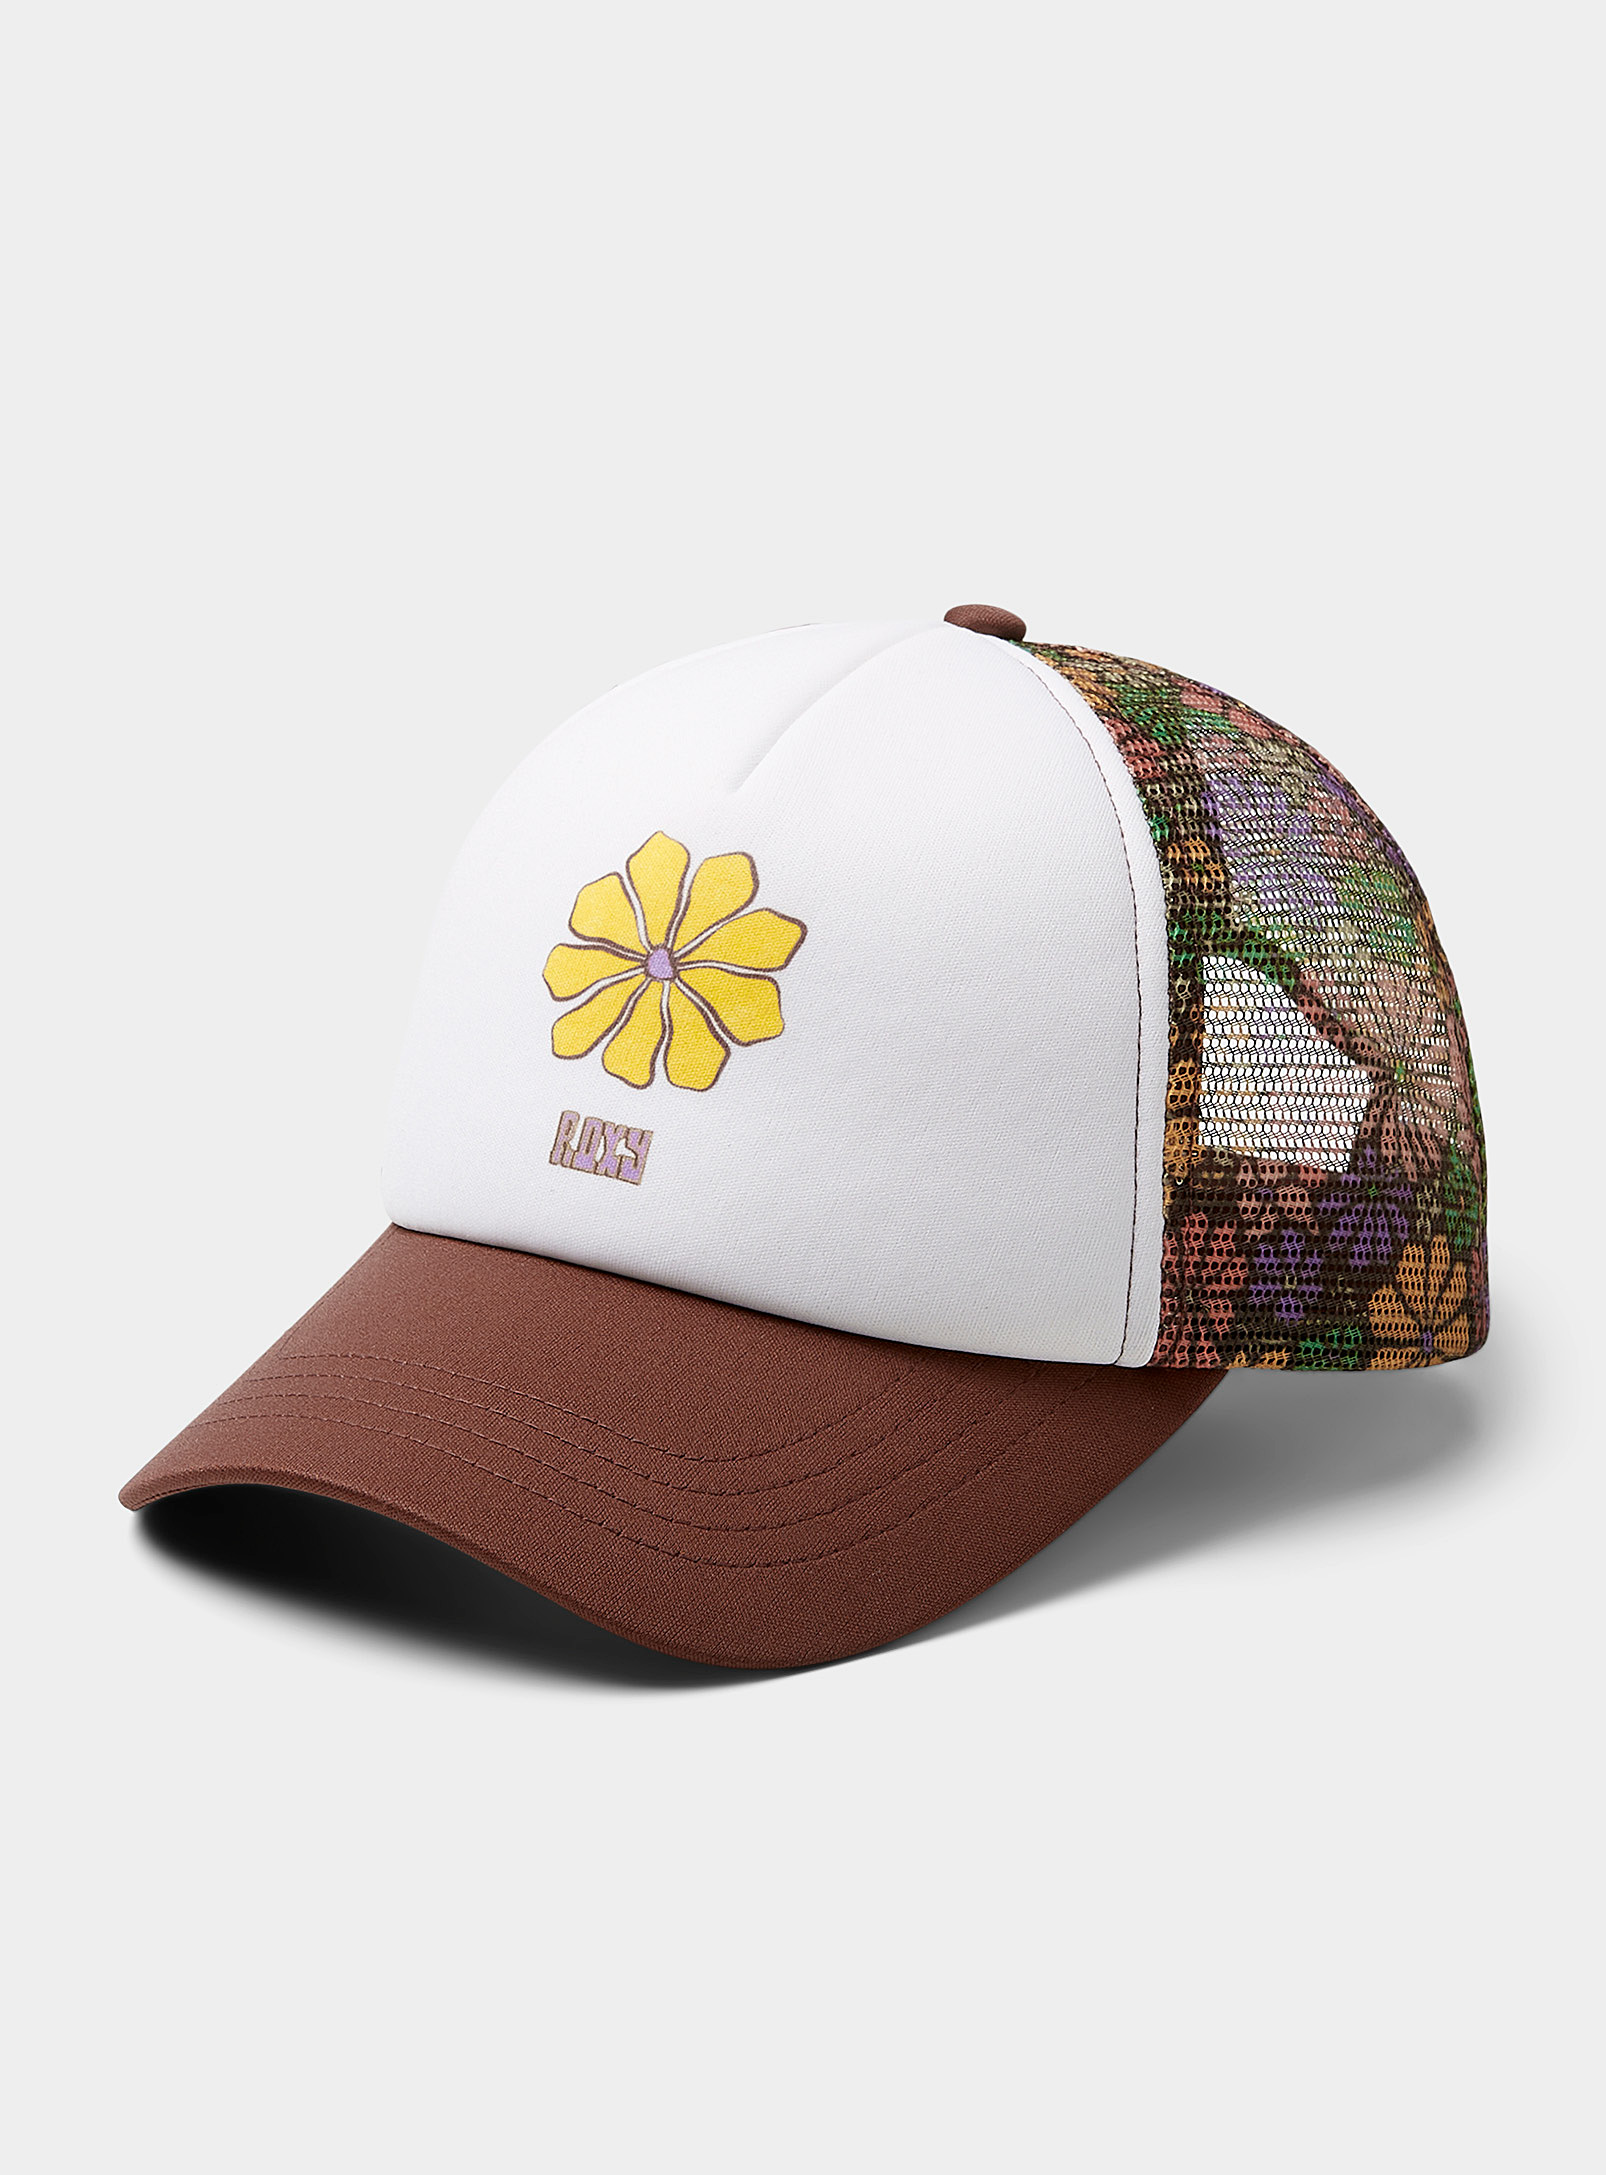 Roxy - La casquette camionneur fleurs colorées